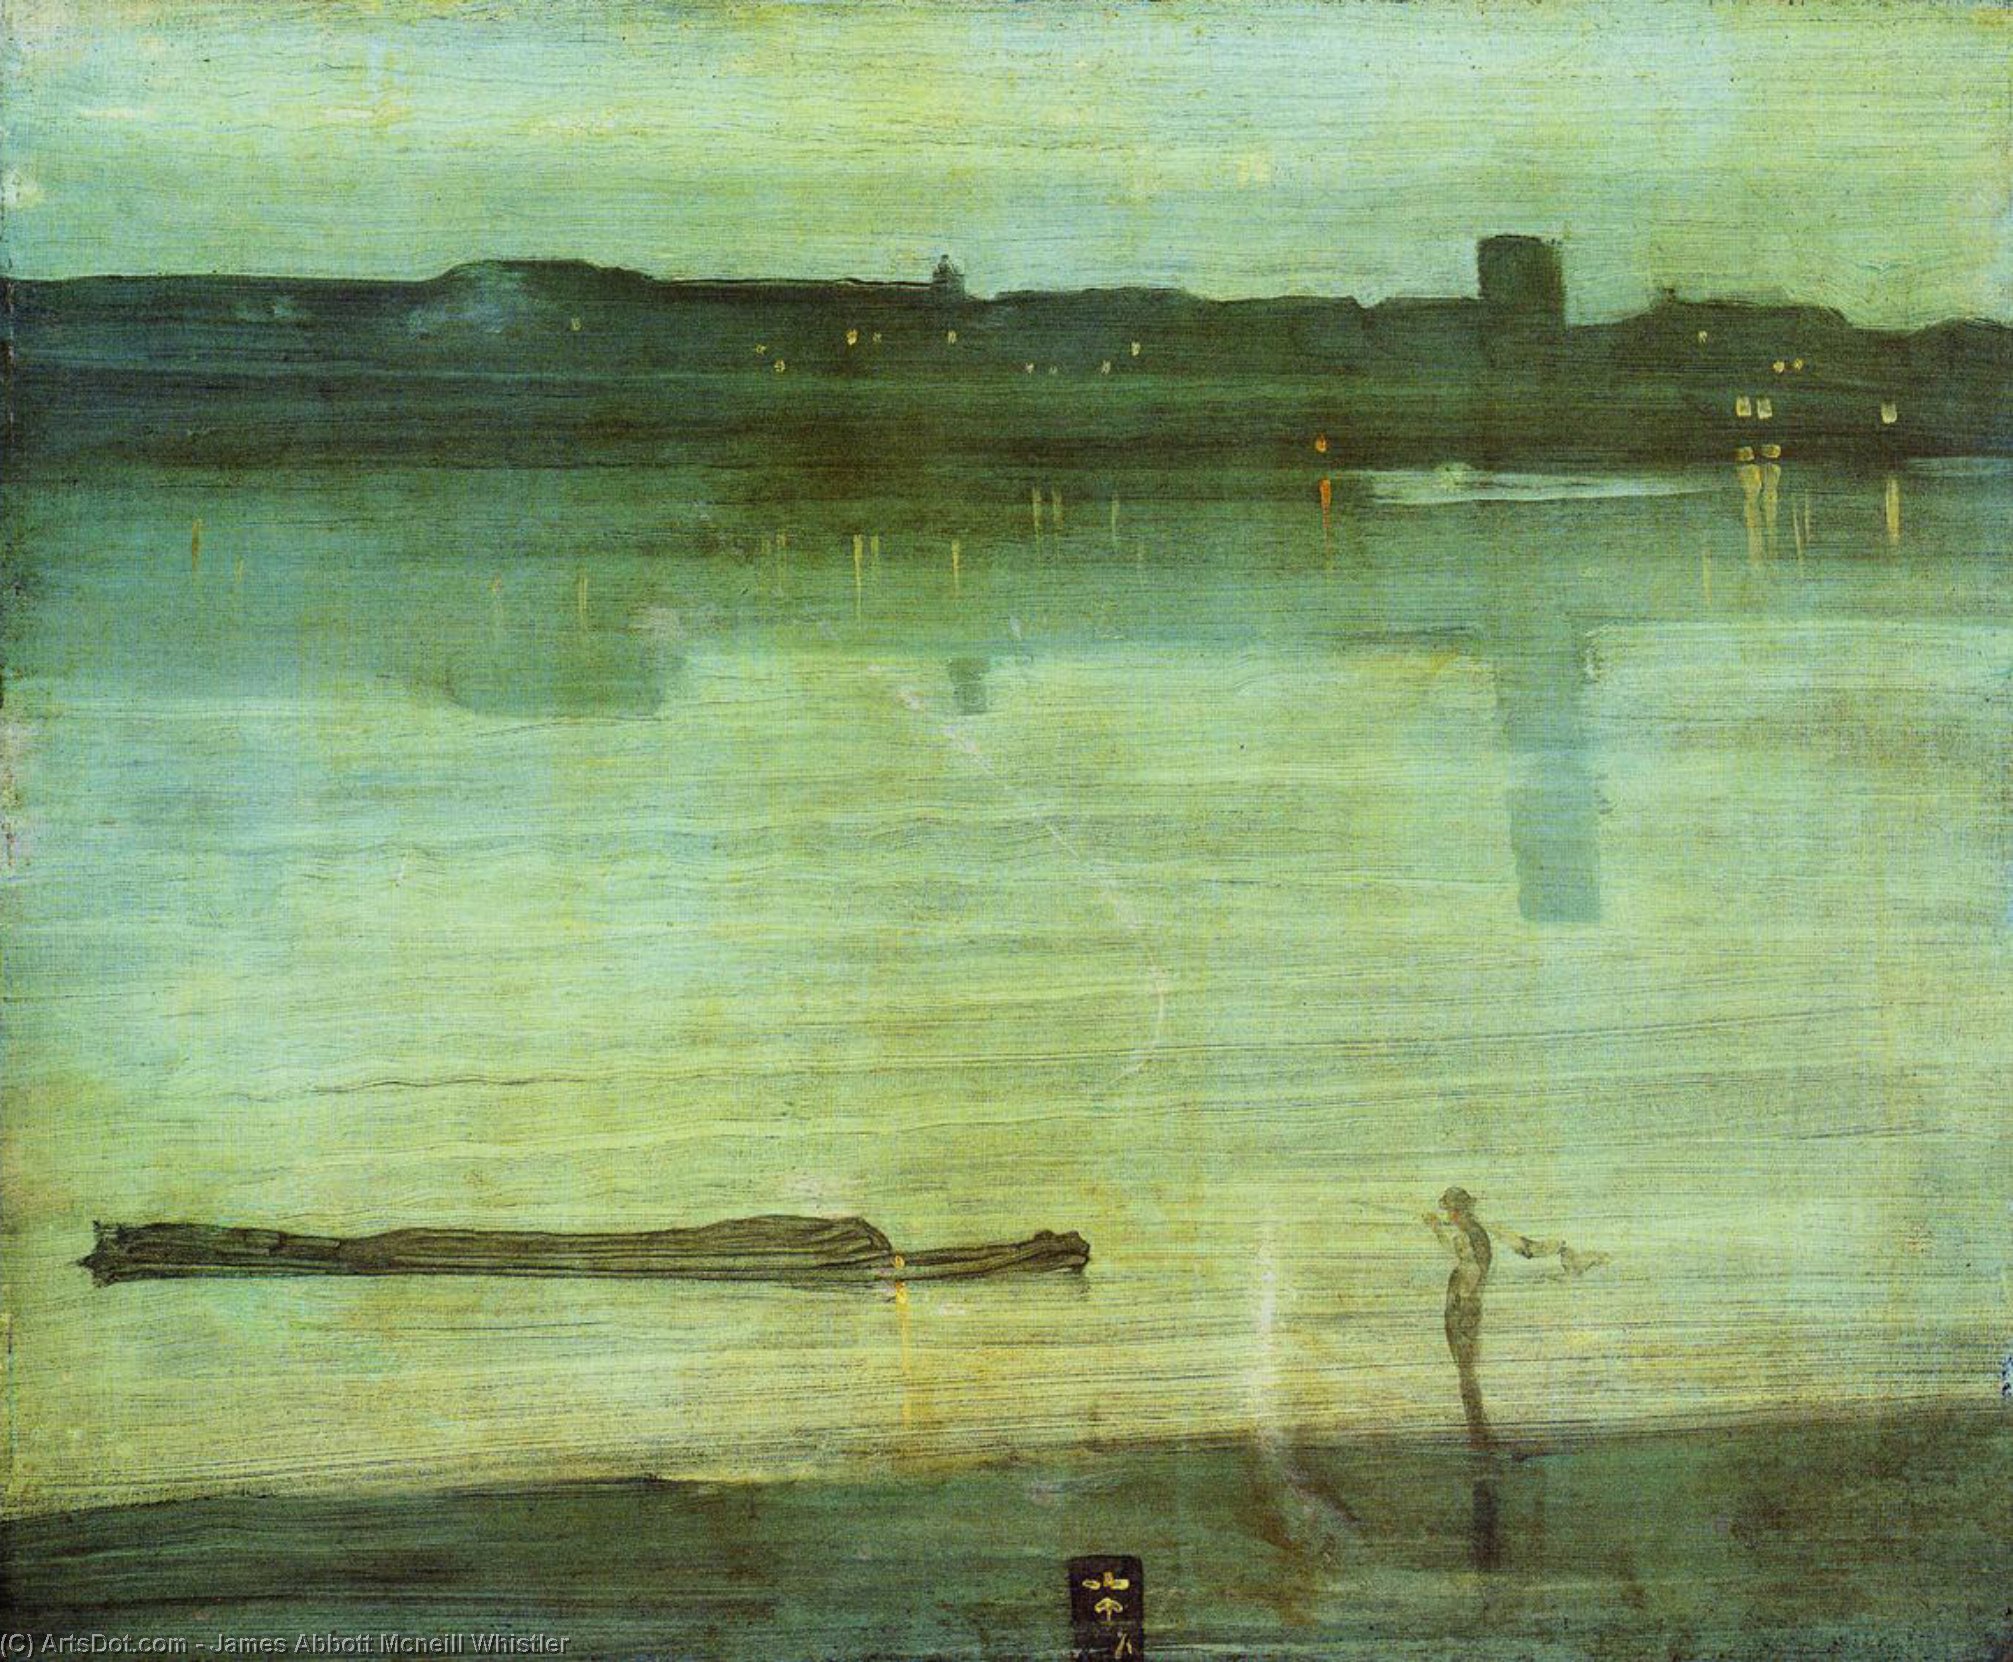 WikiOO.org - Güzel Sanatlar Ansiklopedisi - Resim, Resimler James Abbott Mcneill Whistler - Nocturne in Blue and Green